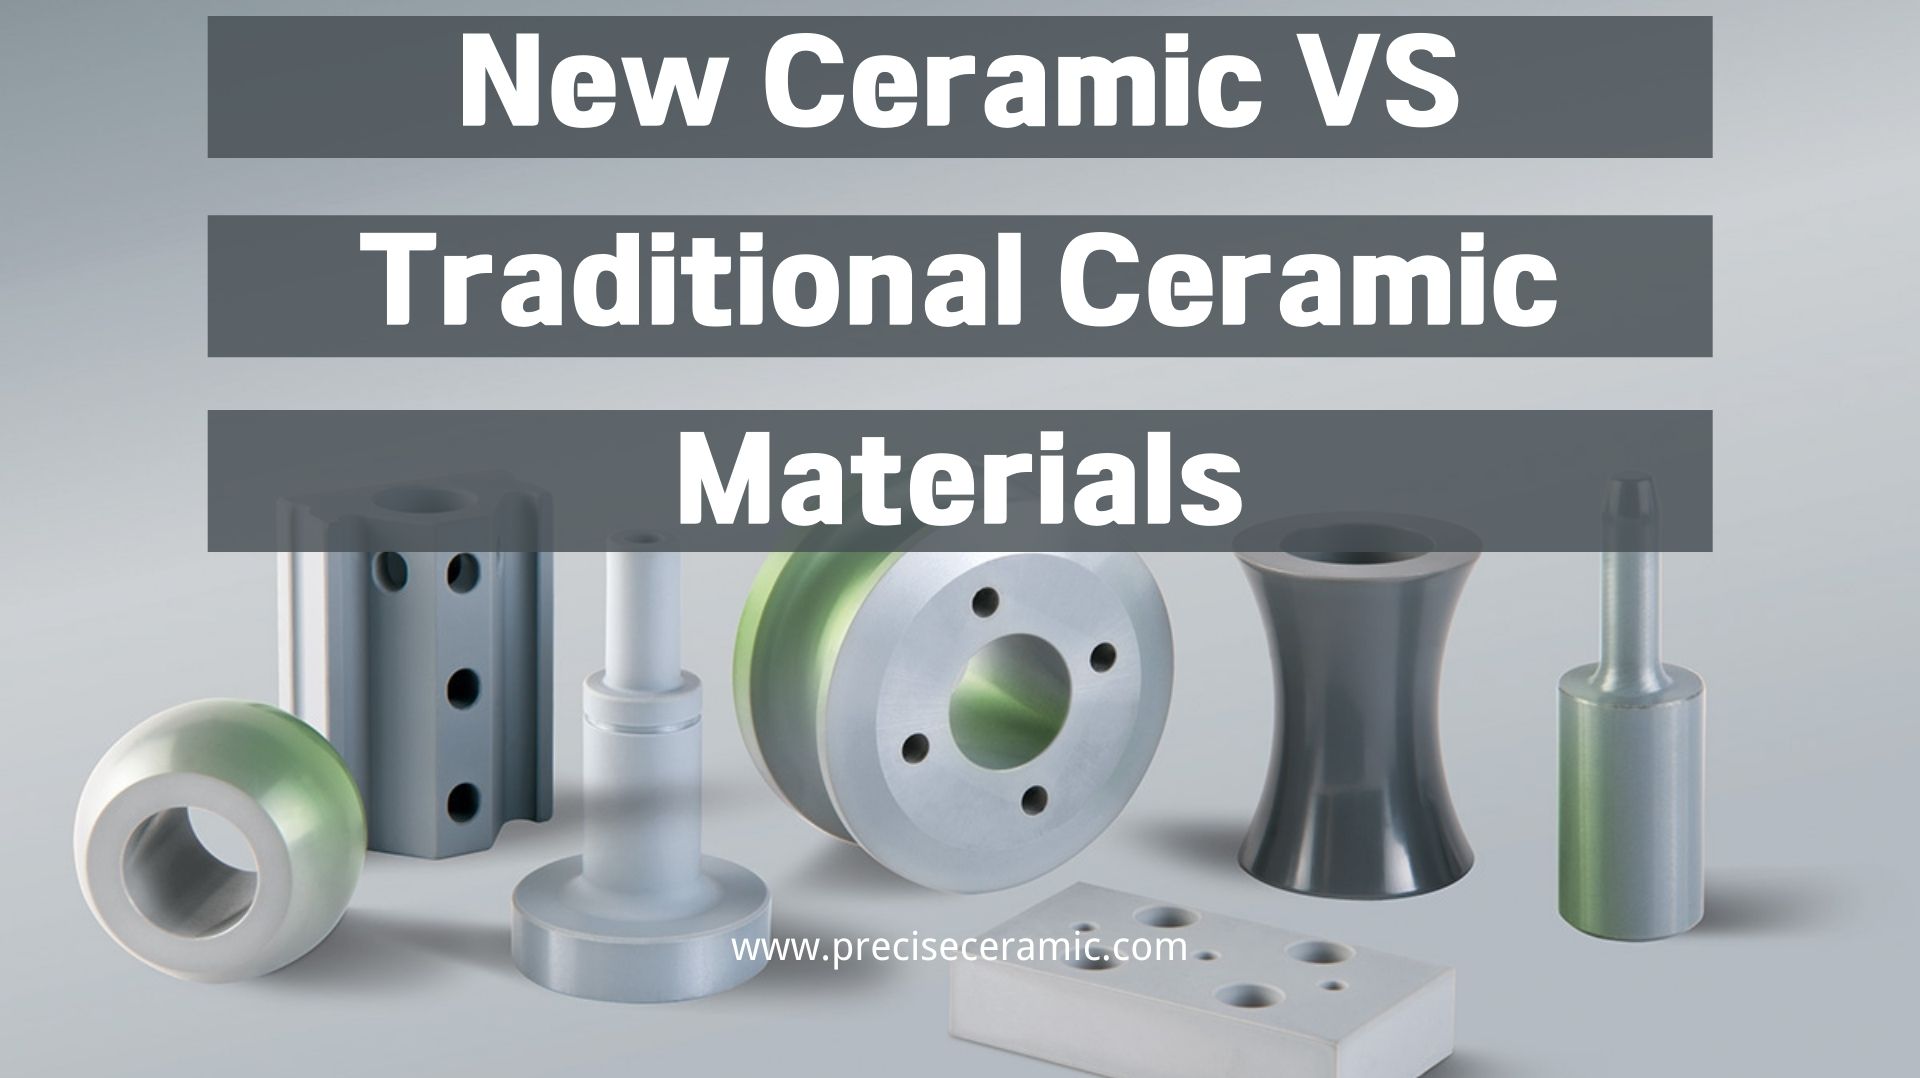 New Ceramic VS Traditional Ceramic Materials